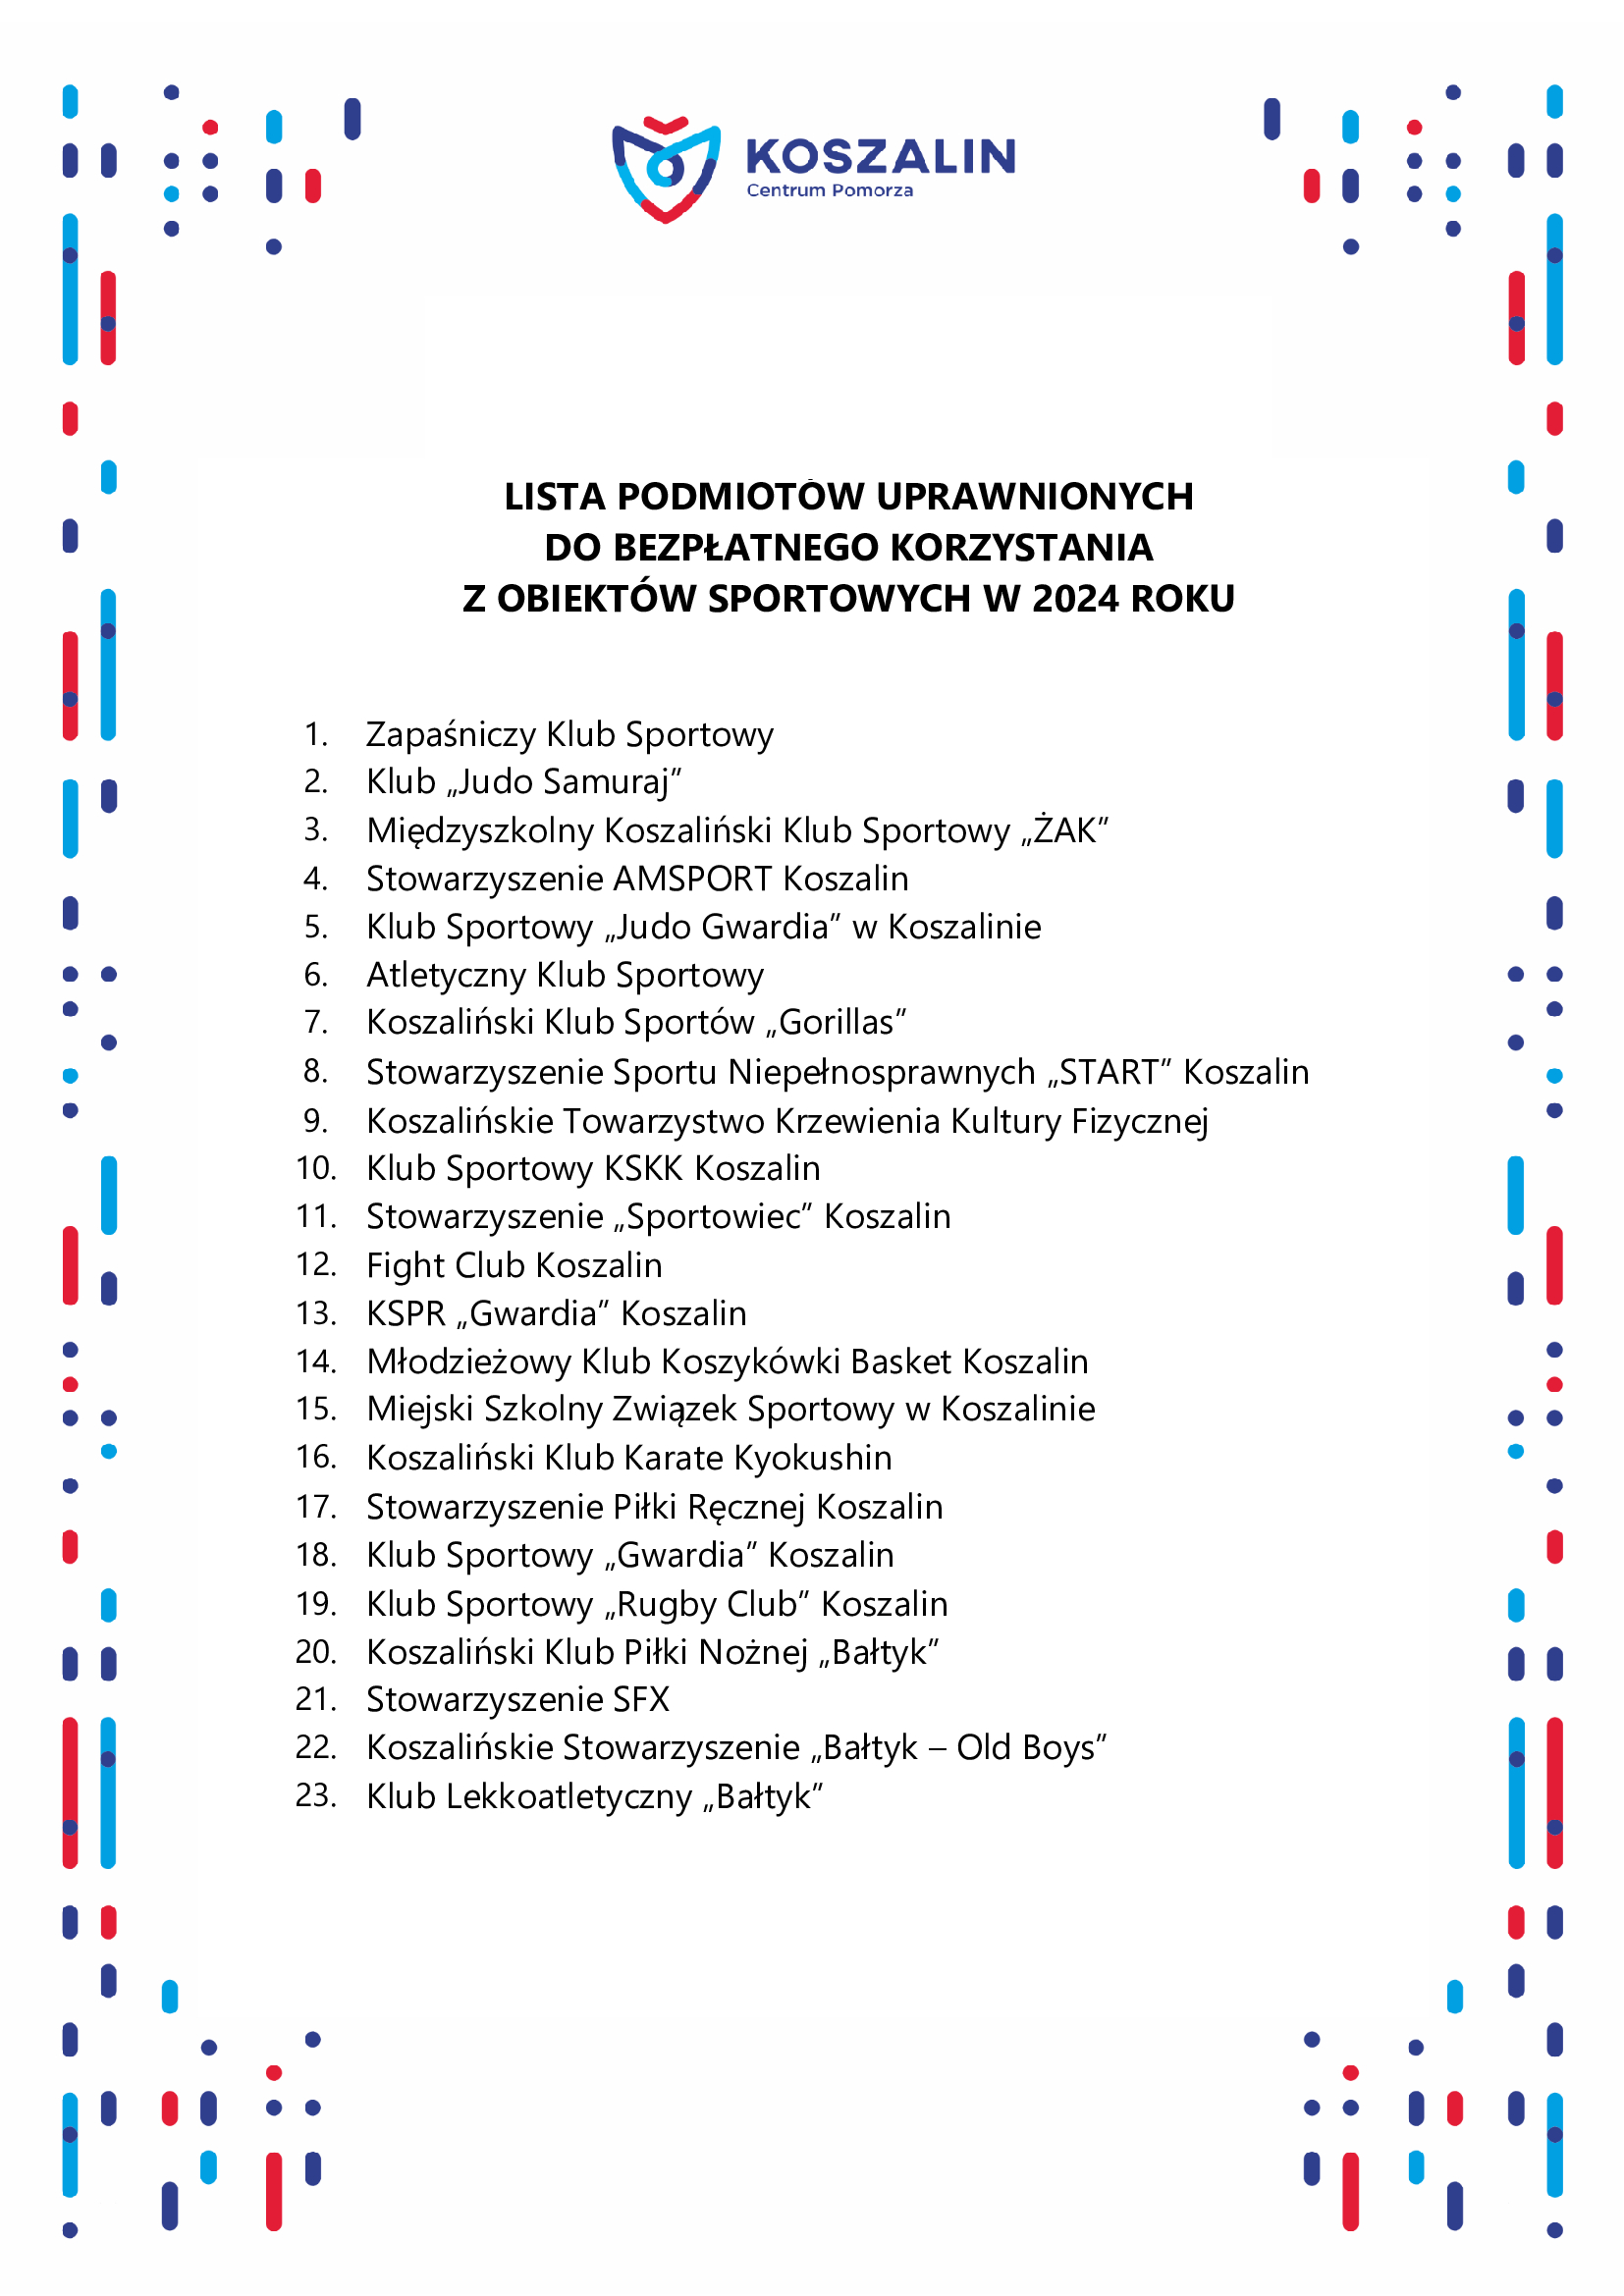 Lista klubów i stowarzyszeń sportowych uprawnionych do bezpłatnego korzystania z obiektów sportowych na terenie Koszalina w 2024 roku.